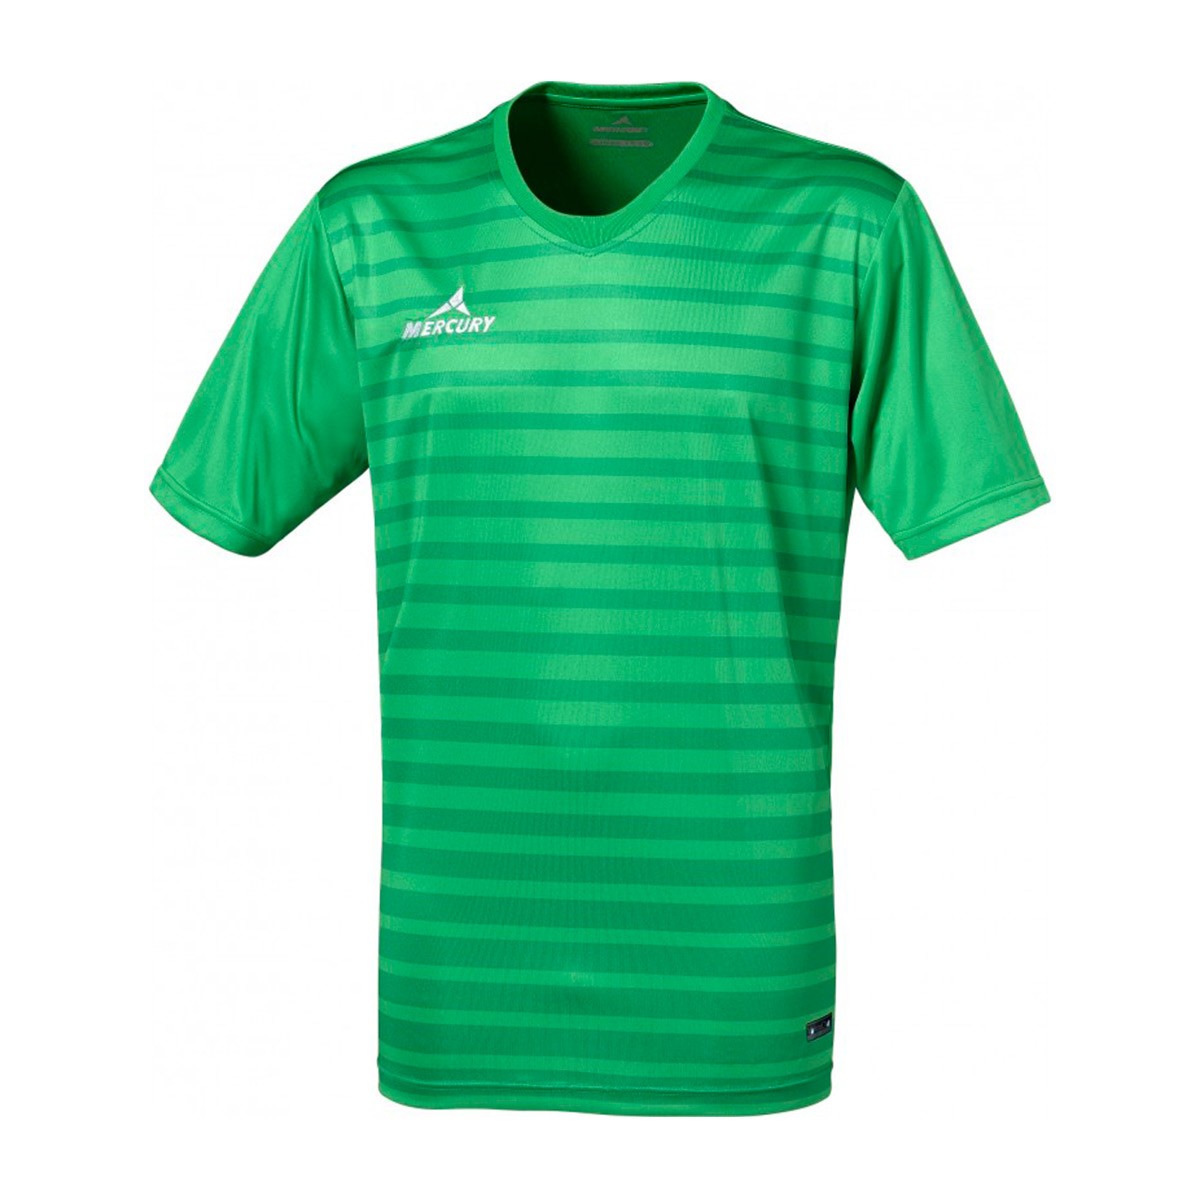 chelsea green jersey